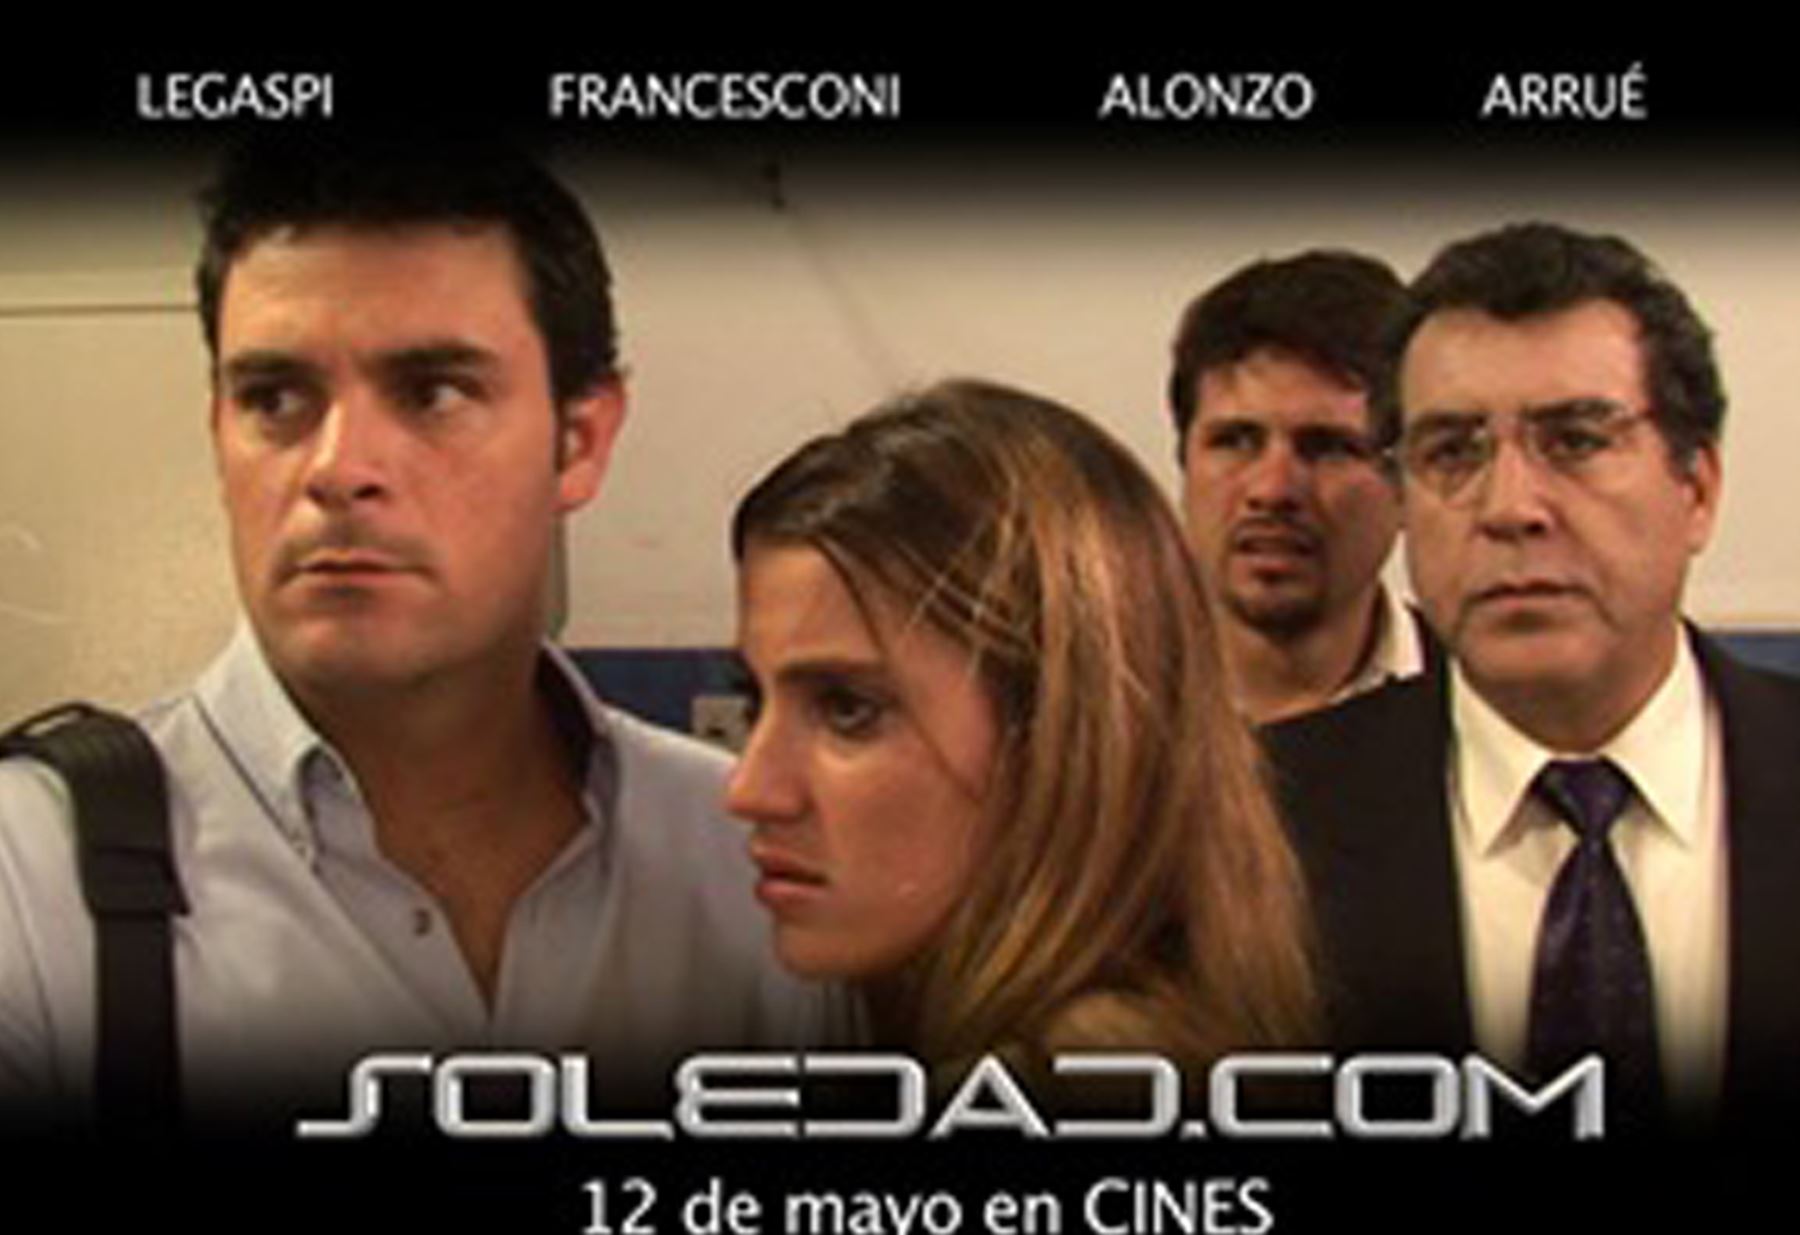 Película peruana “Soledad. com” participará en el Festival Internacional de Cine. Foto: ANDINA/Difusión